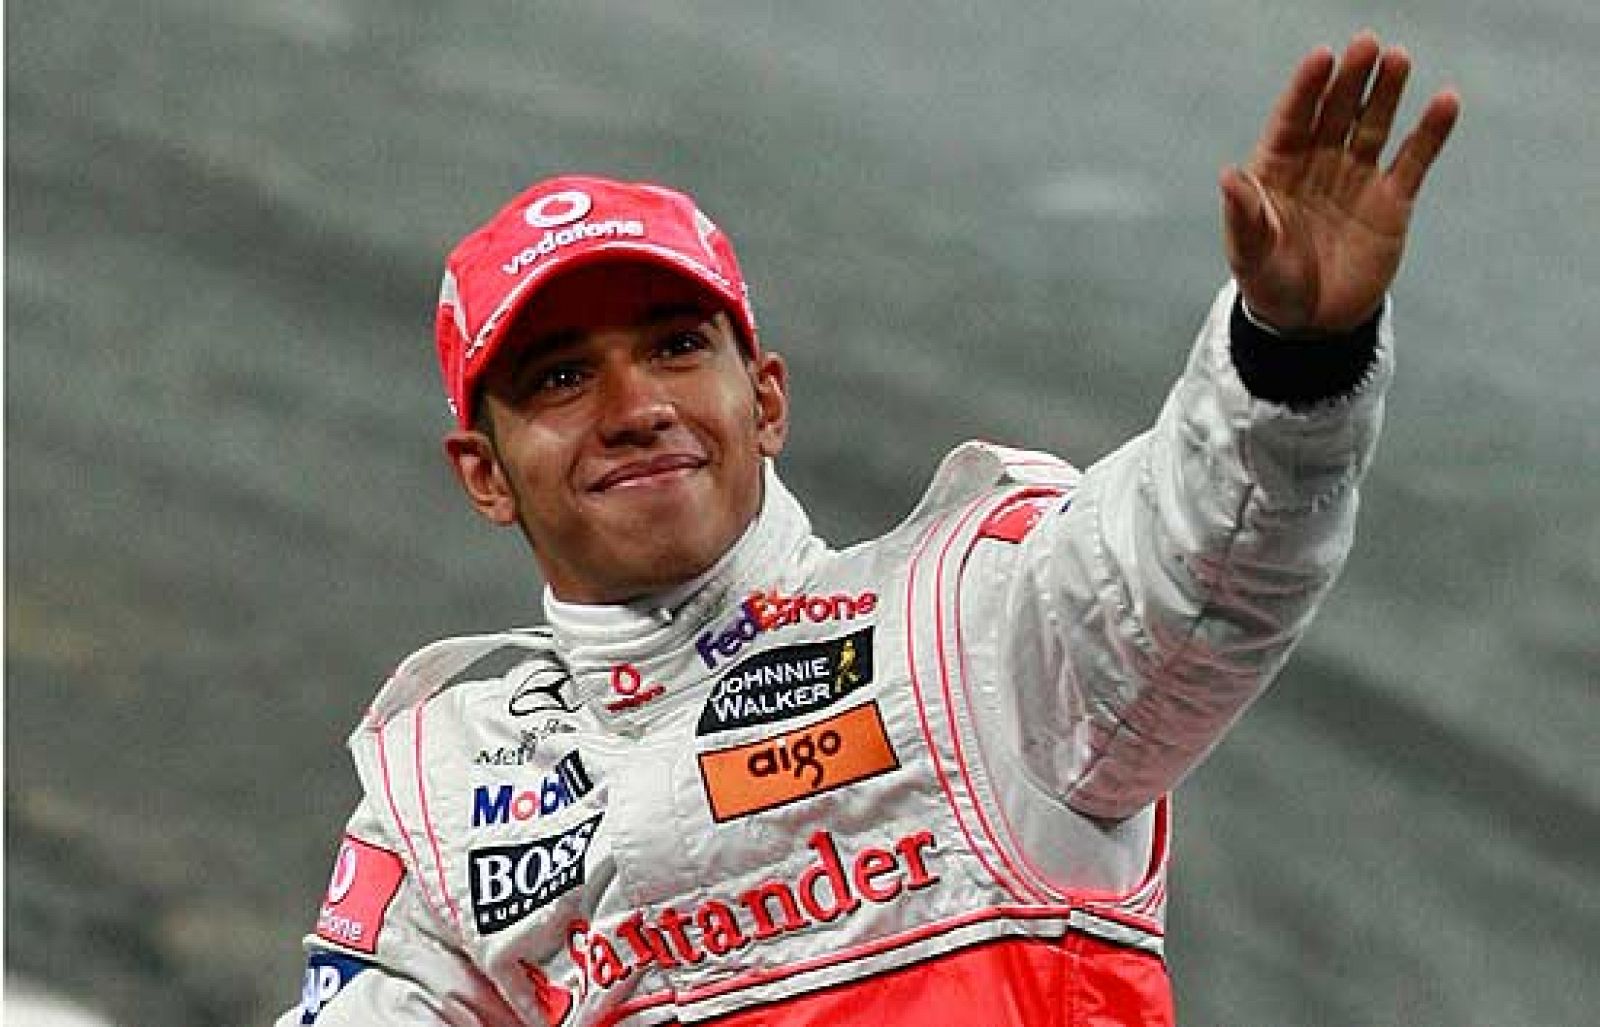 2008 - Hamilton gana el Mundial de Fórmula 1